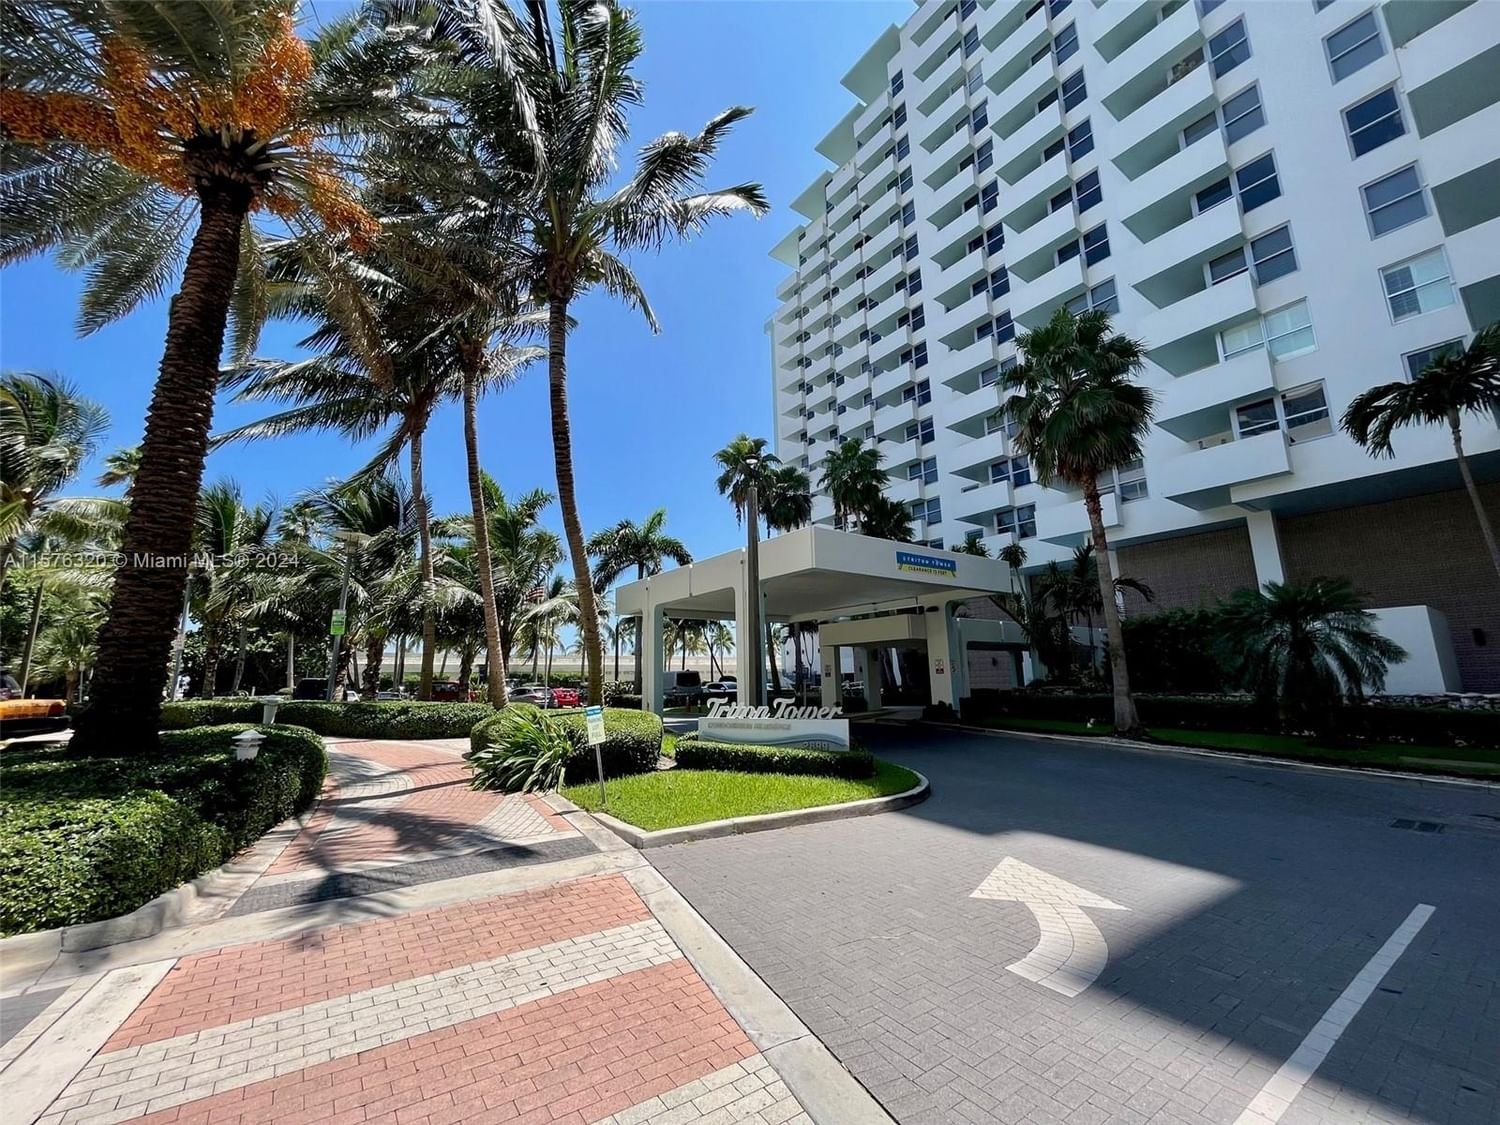 Real estate property located at 2899 Collins Ave #846, Miami-Dade County, TRITON TOWER CONDO, Miami Beach, FL